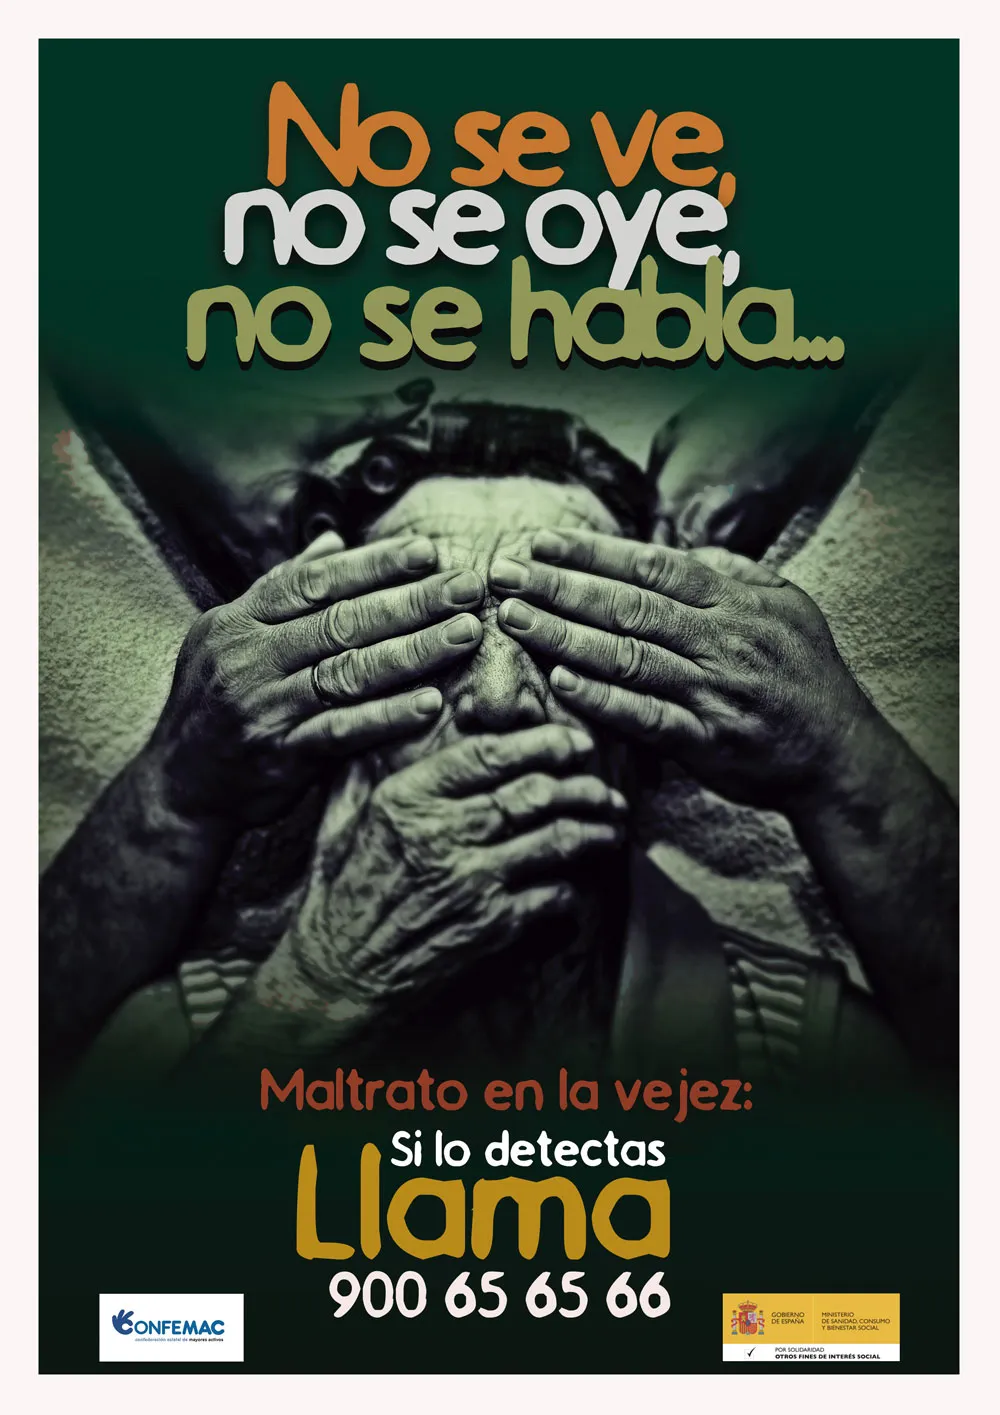 Foto del cartel del maltrato para personas mayores